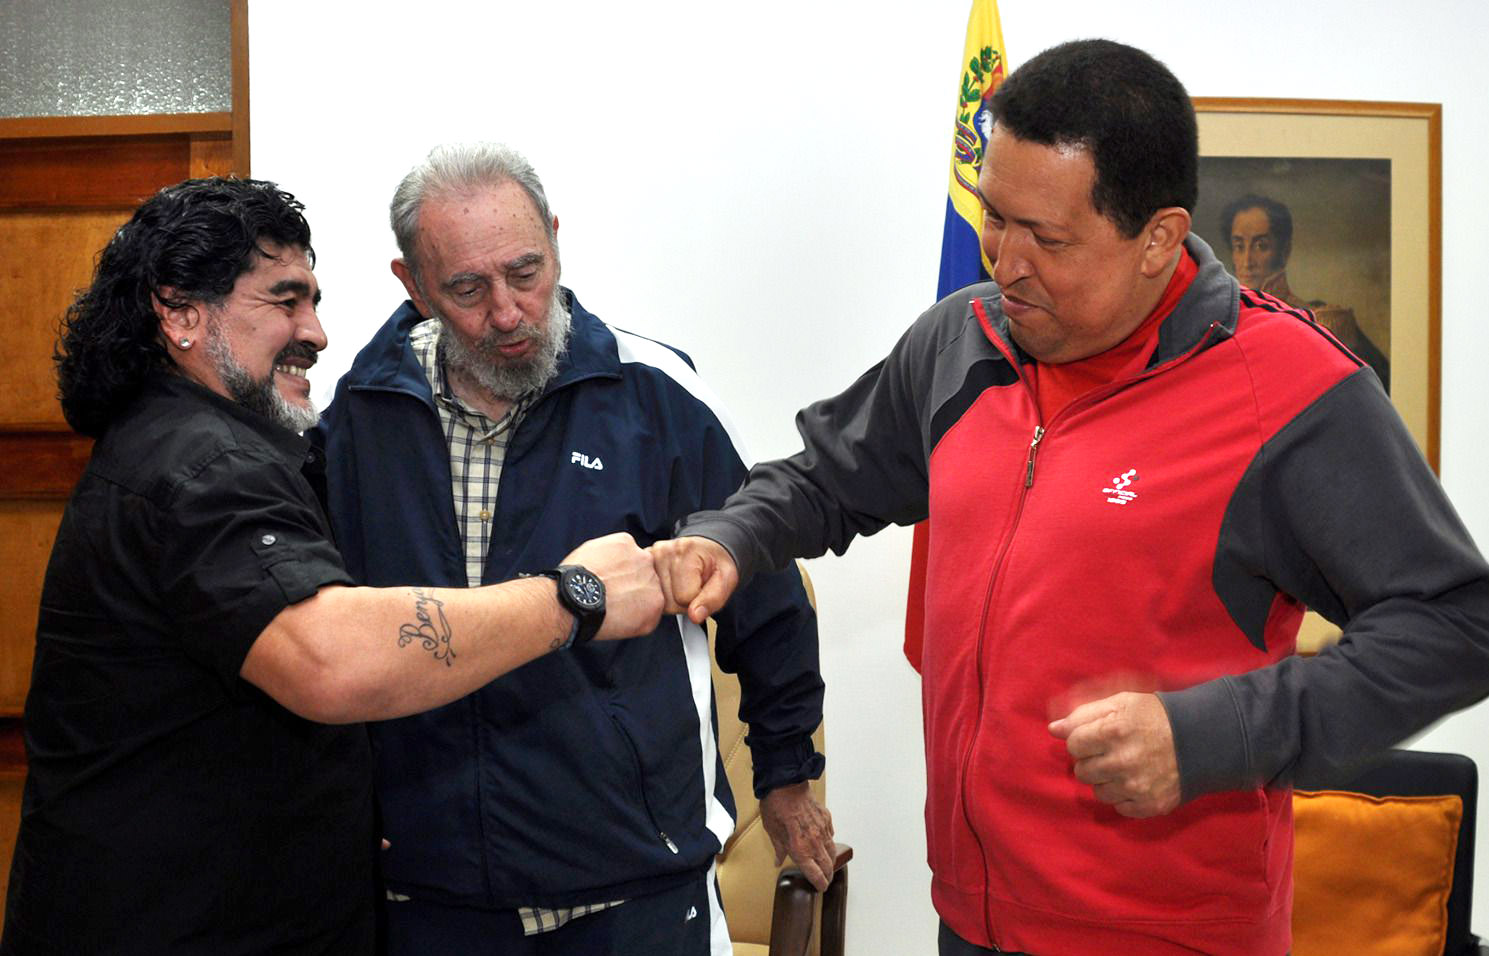 Maradona solía visitar a los ex presidentes Fidel Castro (Cuba) y Hugo Chávez (Venezuela)  (Foto: Zuma/Shutterstock)